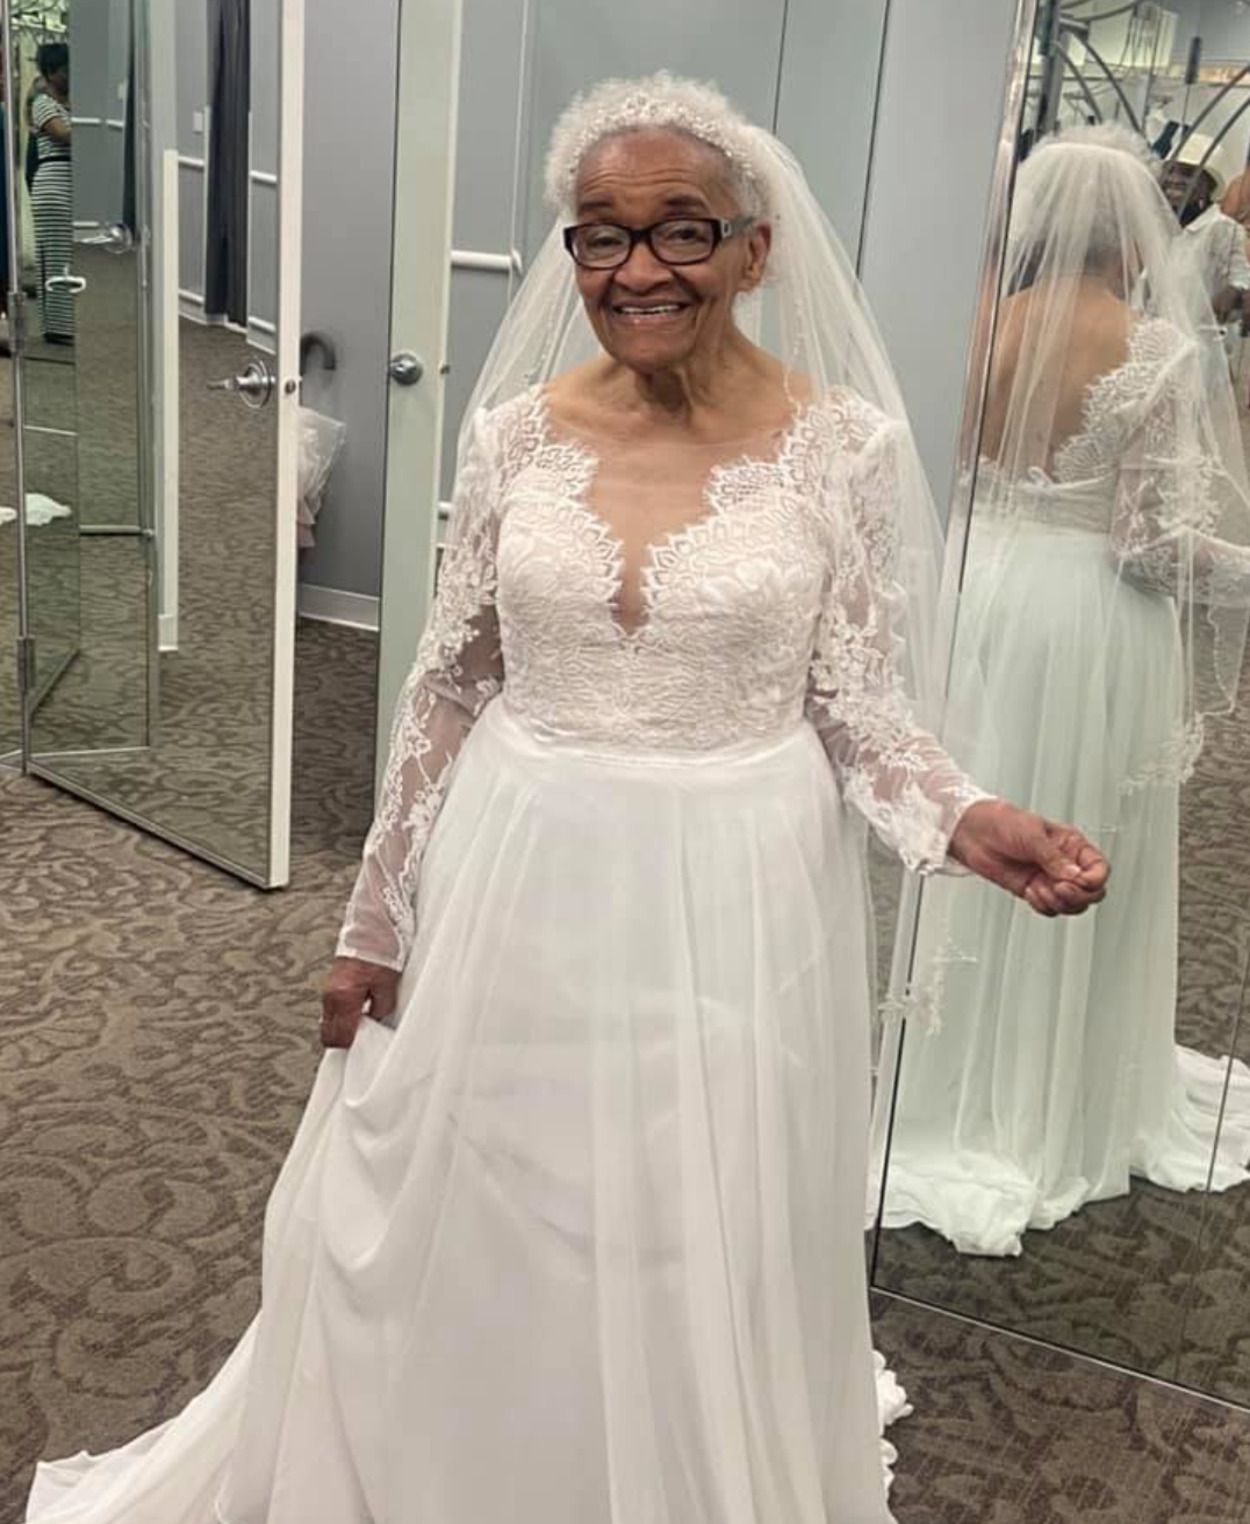 Cumple su sueño de vestirse de novia a los 94 años: "Siempre quise una boda así, pero nunca pude"